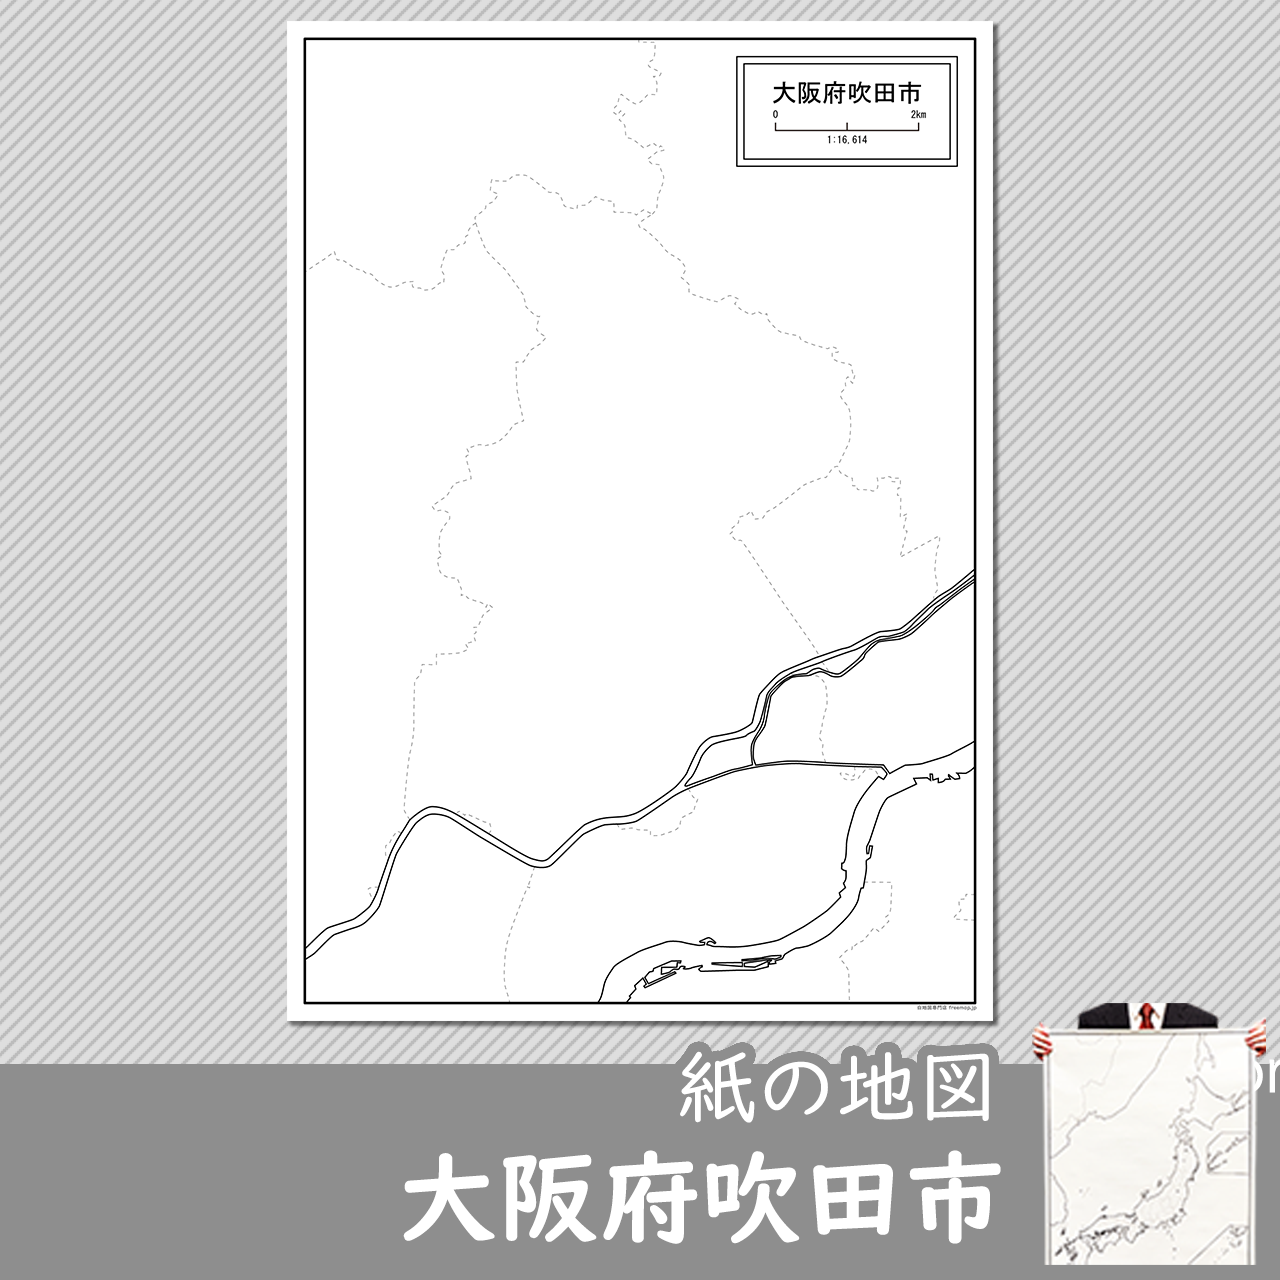 吹田市の紙の白地図のサムネイル